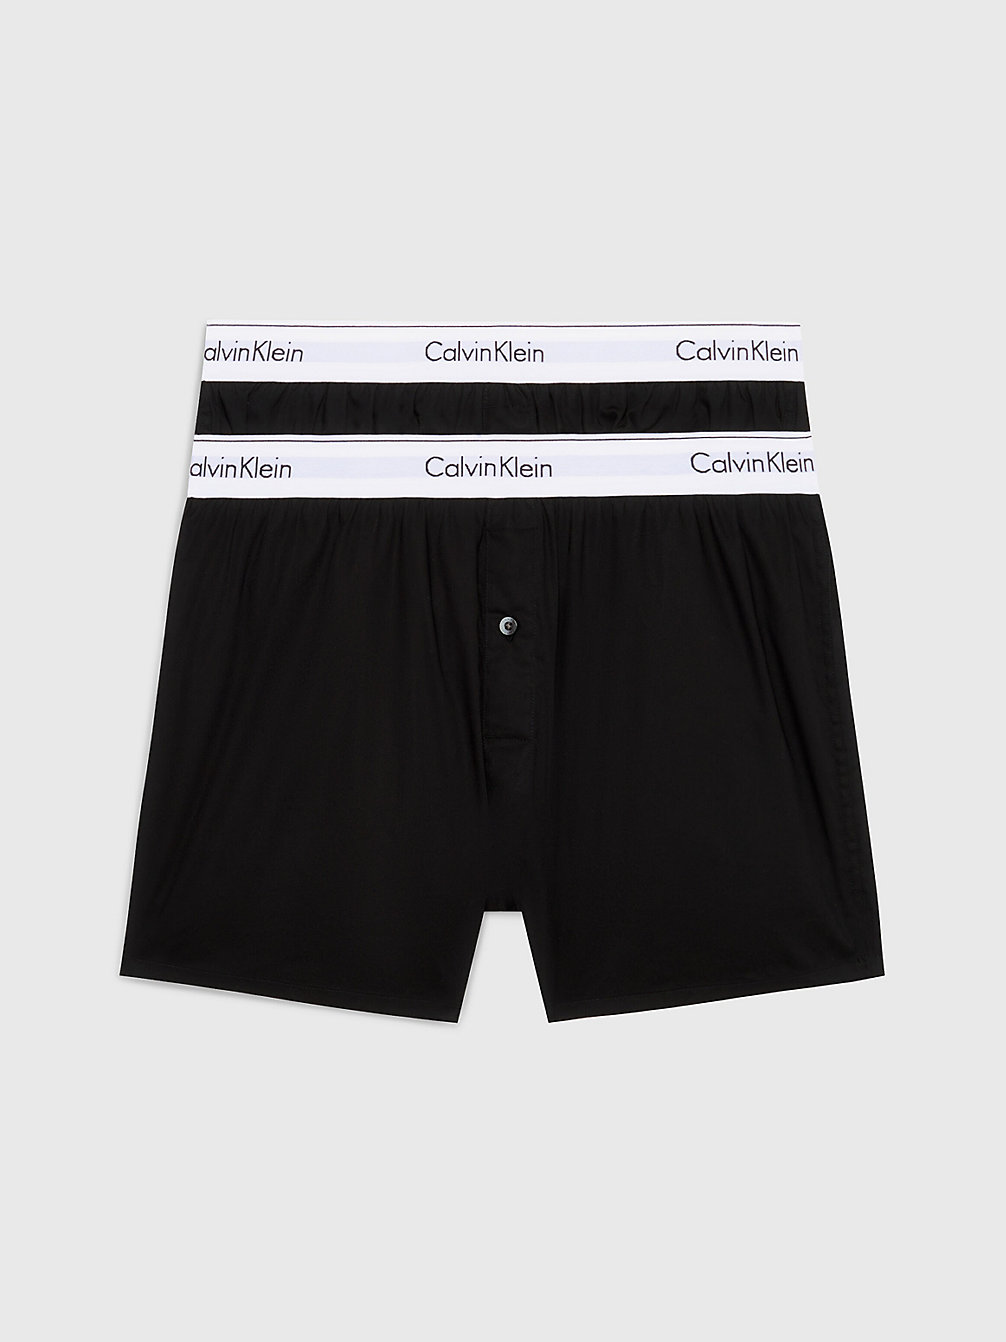 Boxer Slim In Confezione Da 2 - Modern Cotton > BLACK / BLACK > undefined men > Calvin Klein